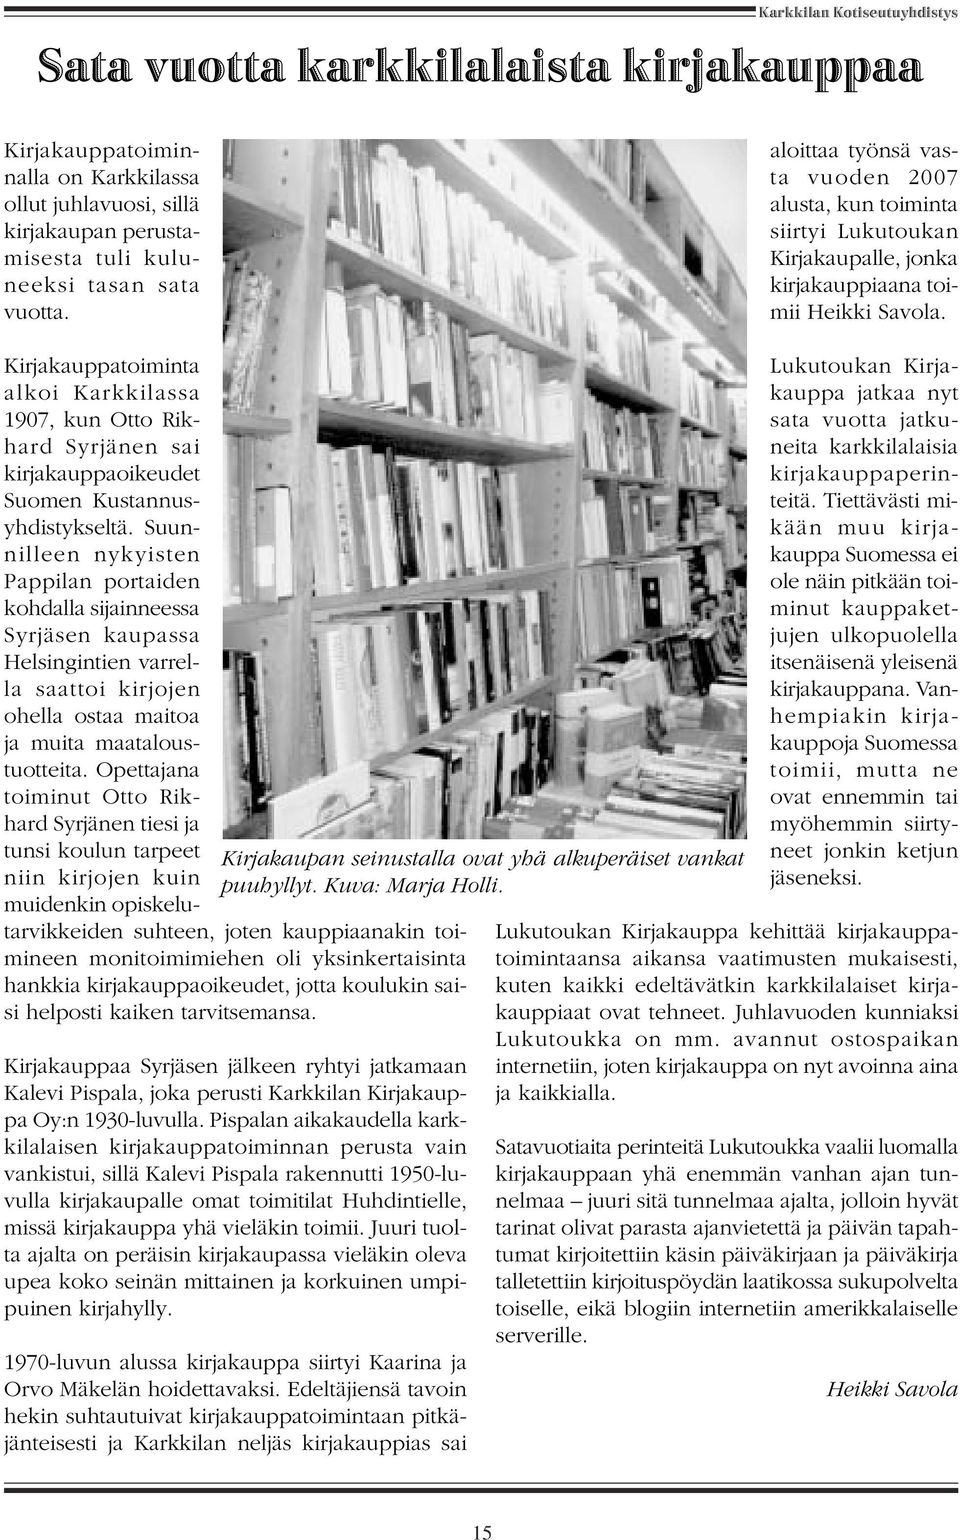 Kirjakauppatoiminta alkoi Karkkilassa 1907, kun Otto Rikhard Syrjänen sai kirjakauppaoikeudet Suomen Kustannusyhdistykseltä.